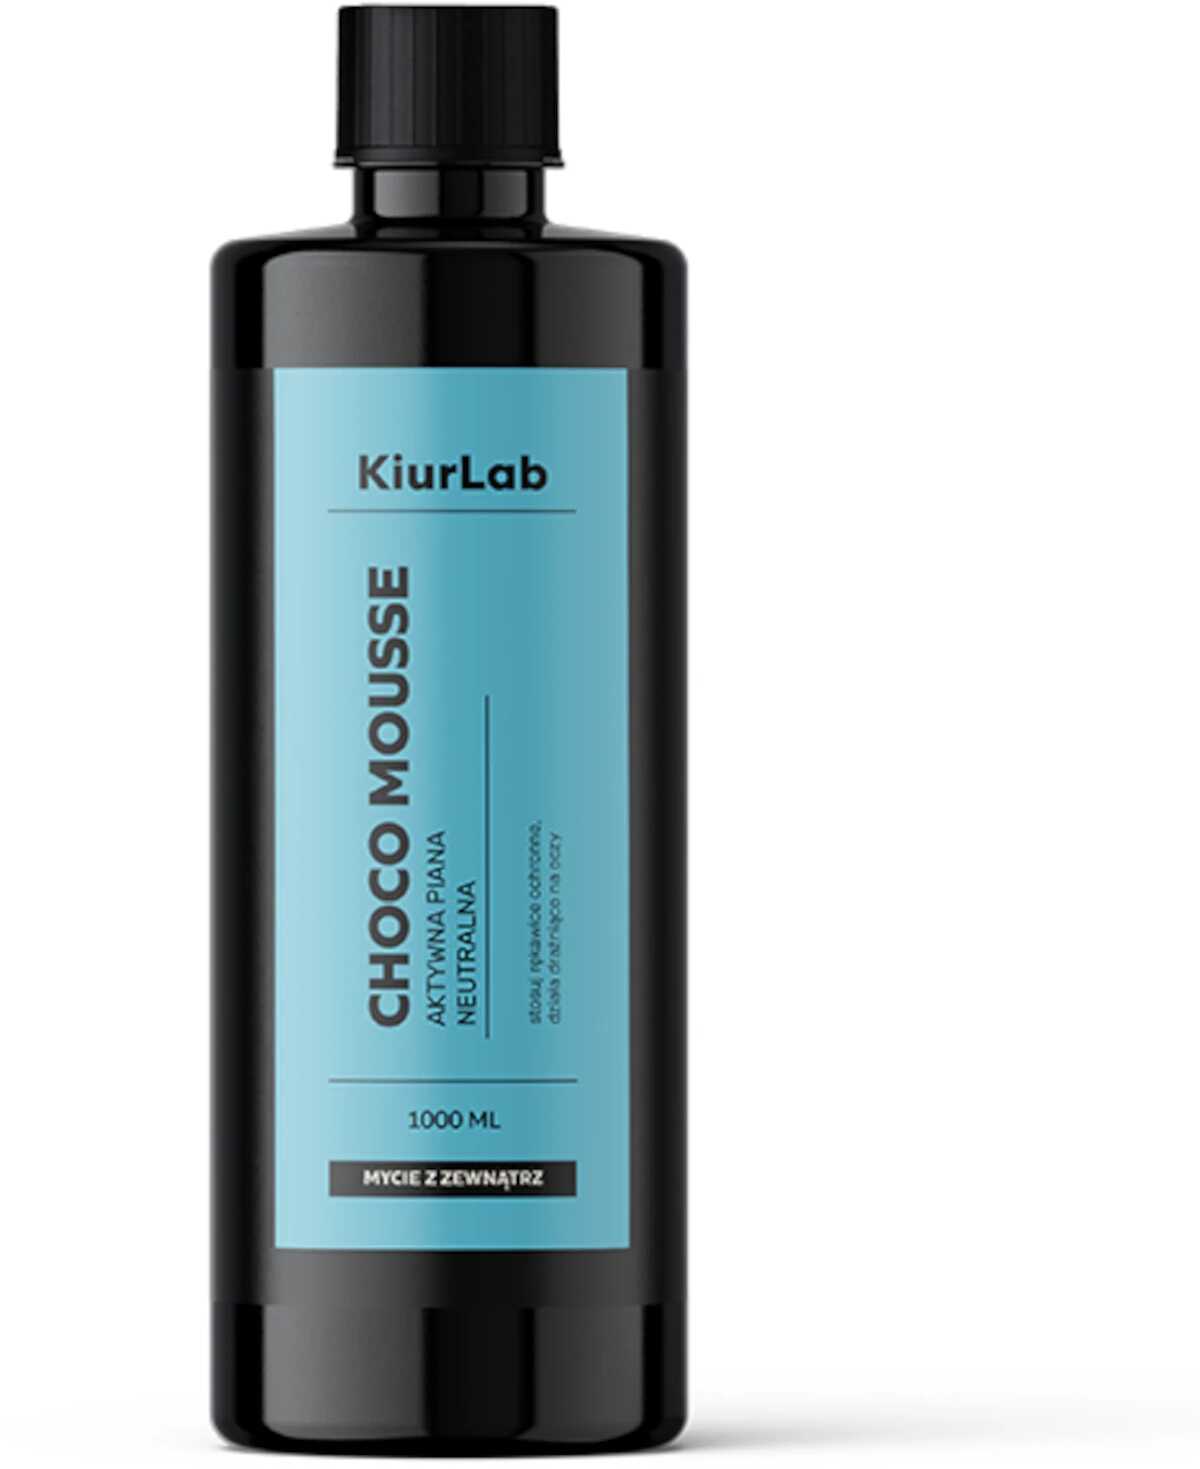 KiurLab Choco Mousse - Piana aktywna o neutralnym pH 1L